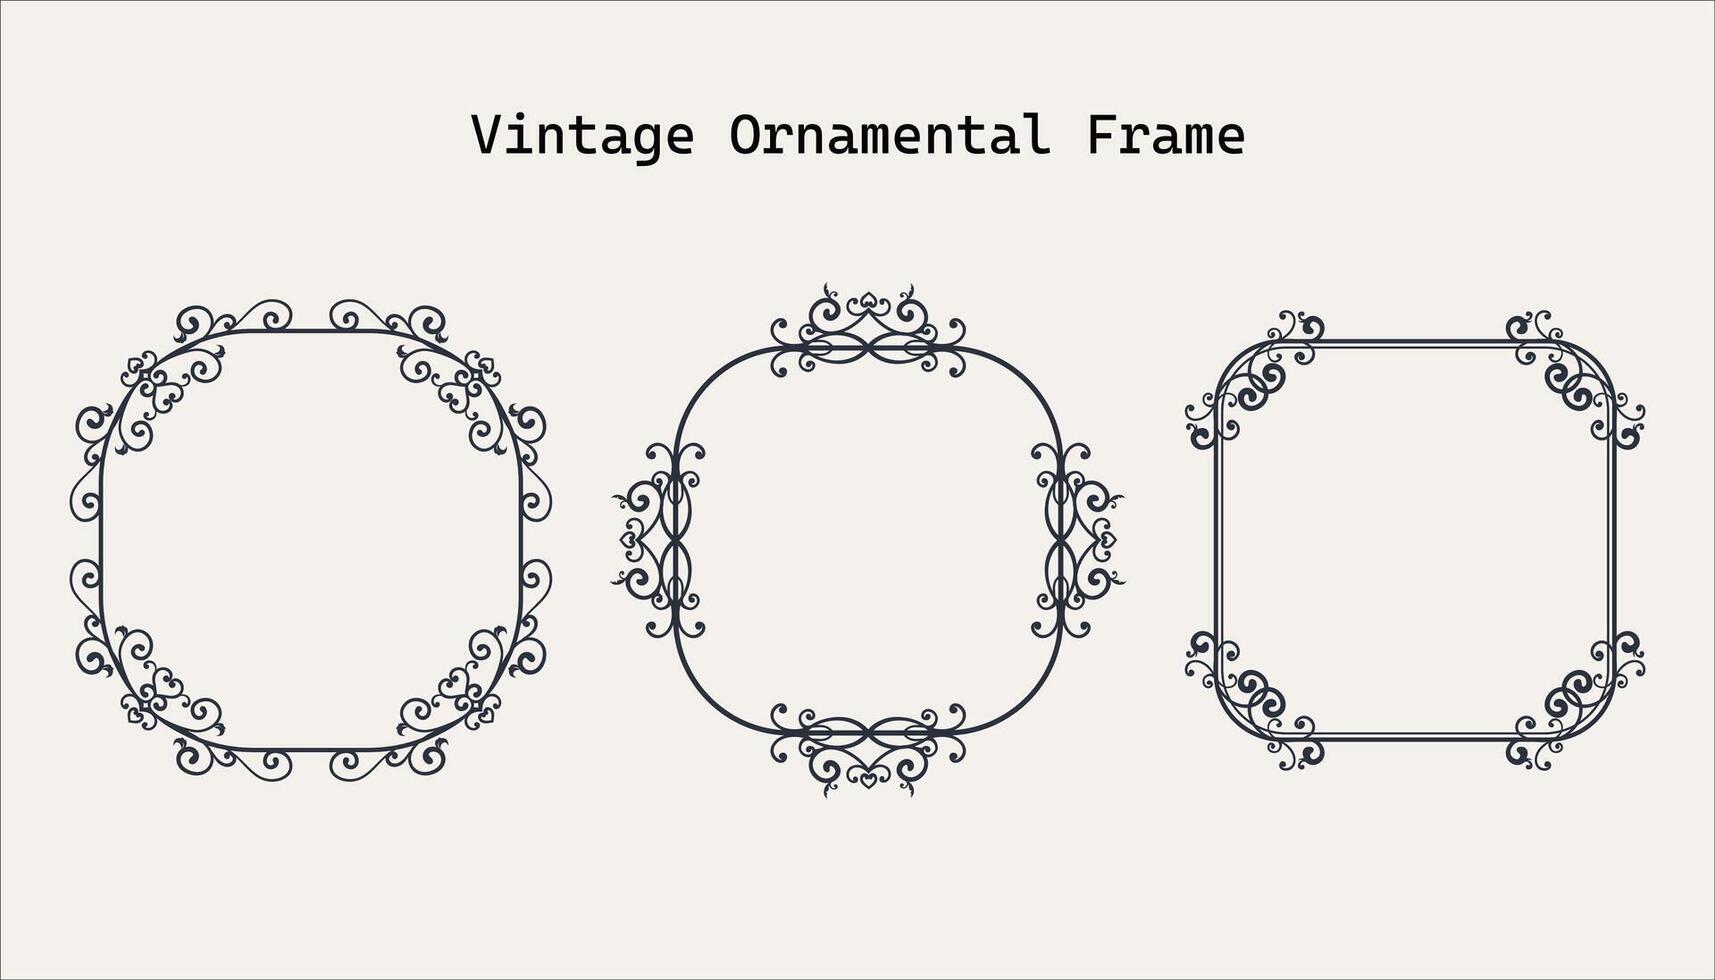 Vintage frame elegant frames set vector